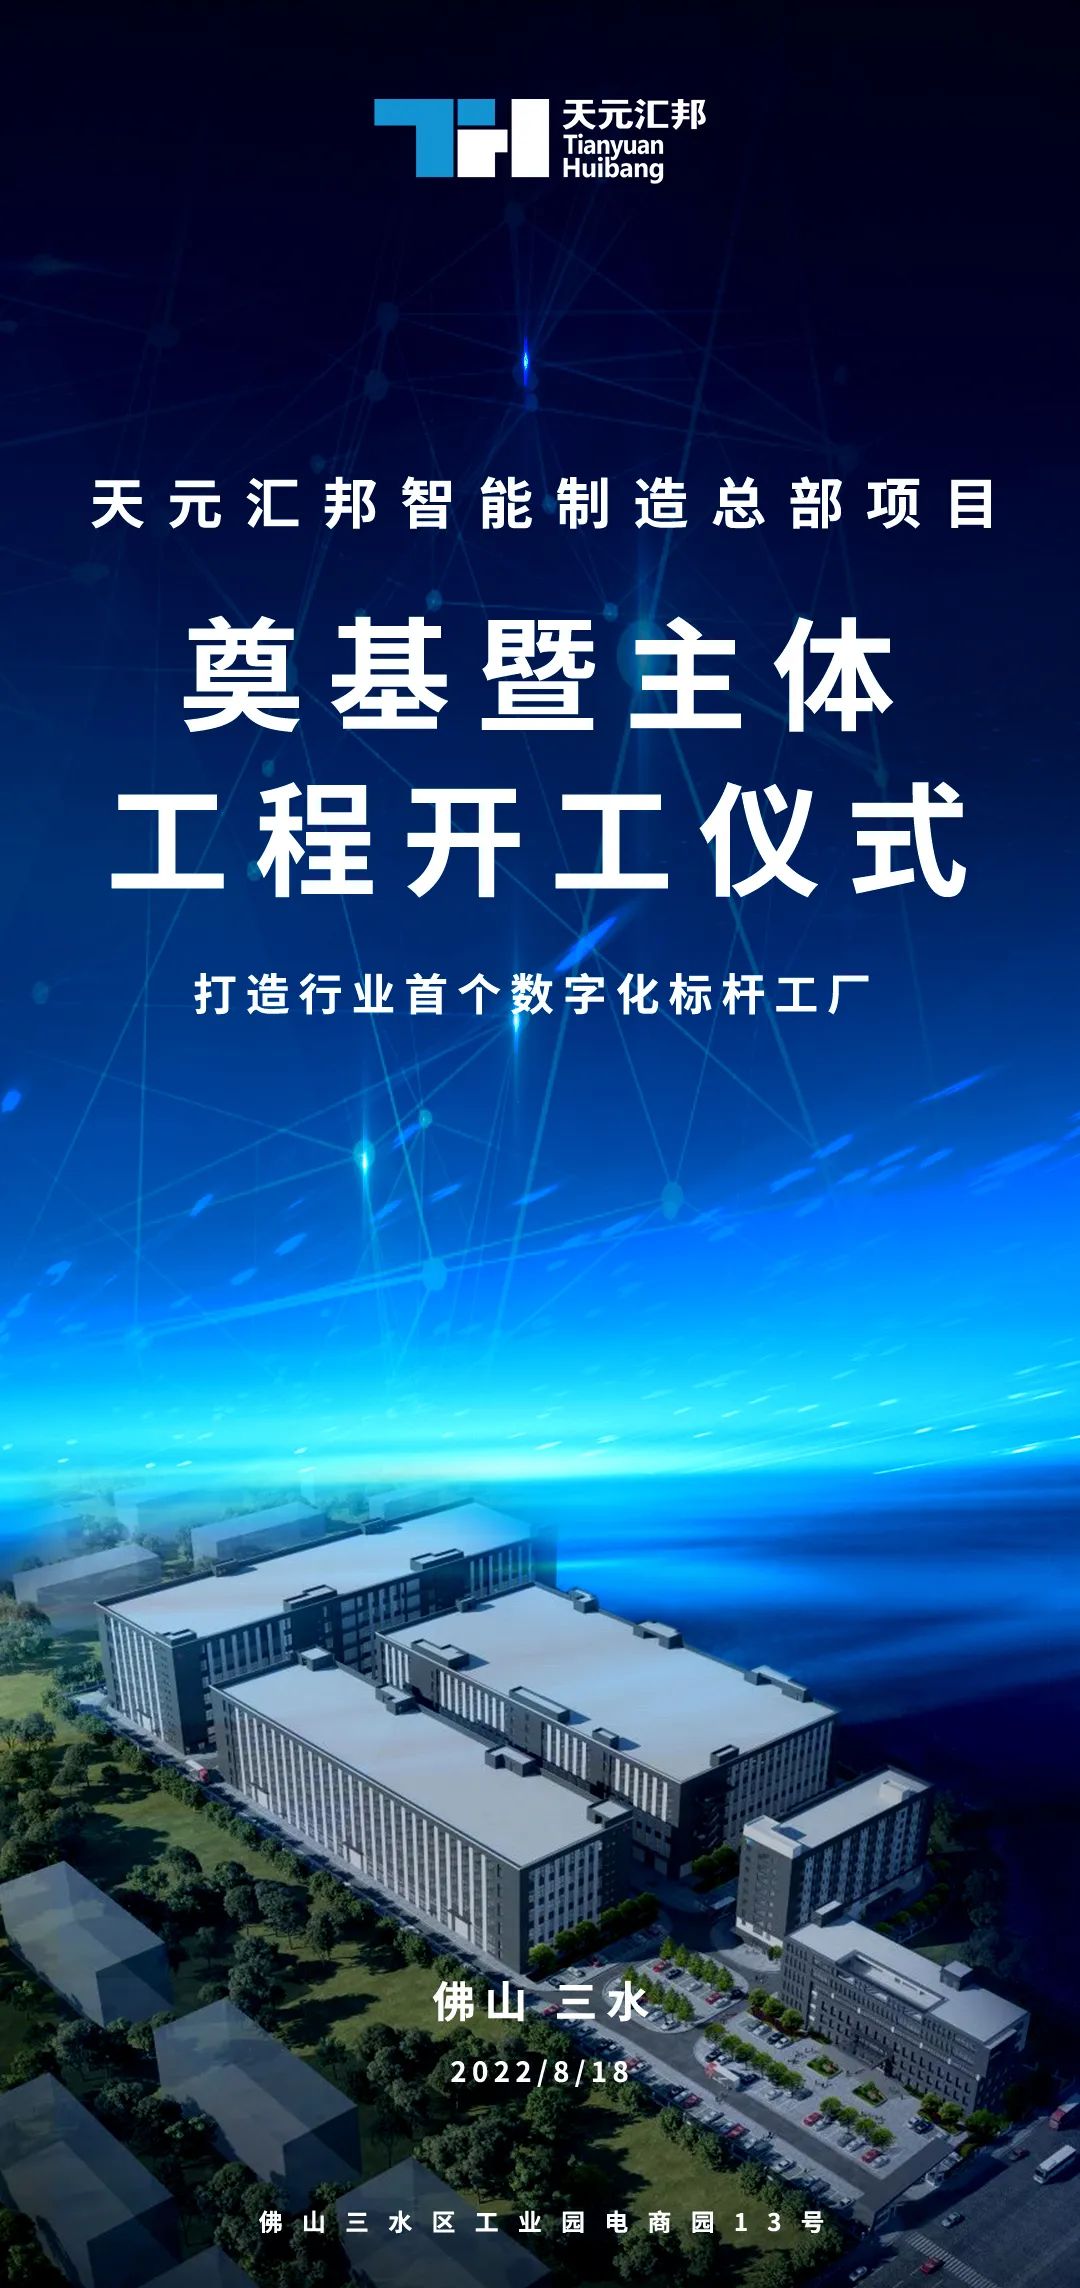 天元匯邦新材料智能制造產業總部基地項目 奠基開工儀式